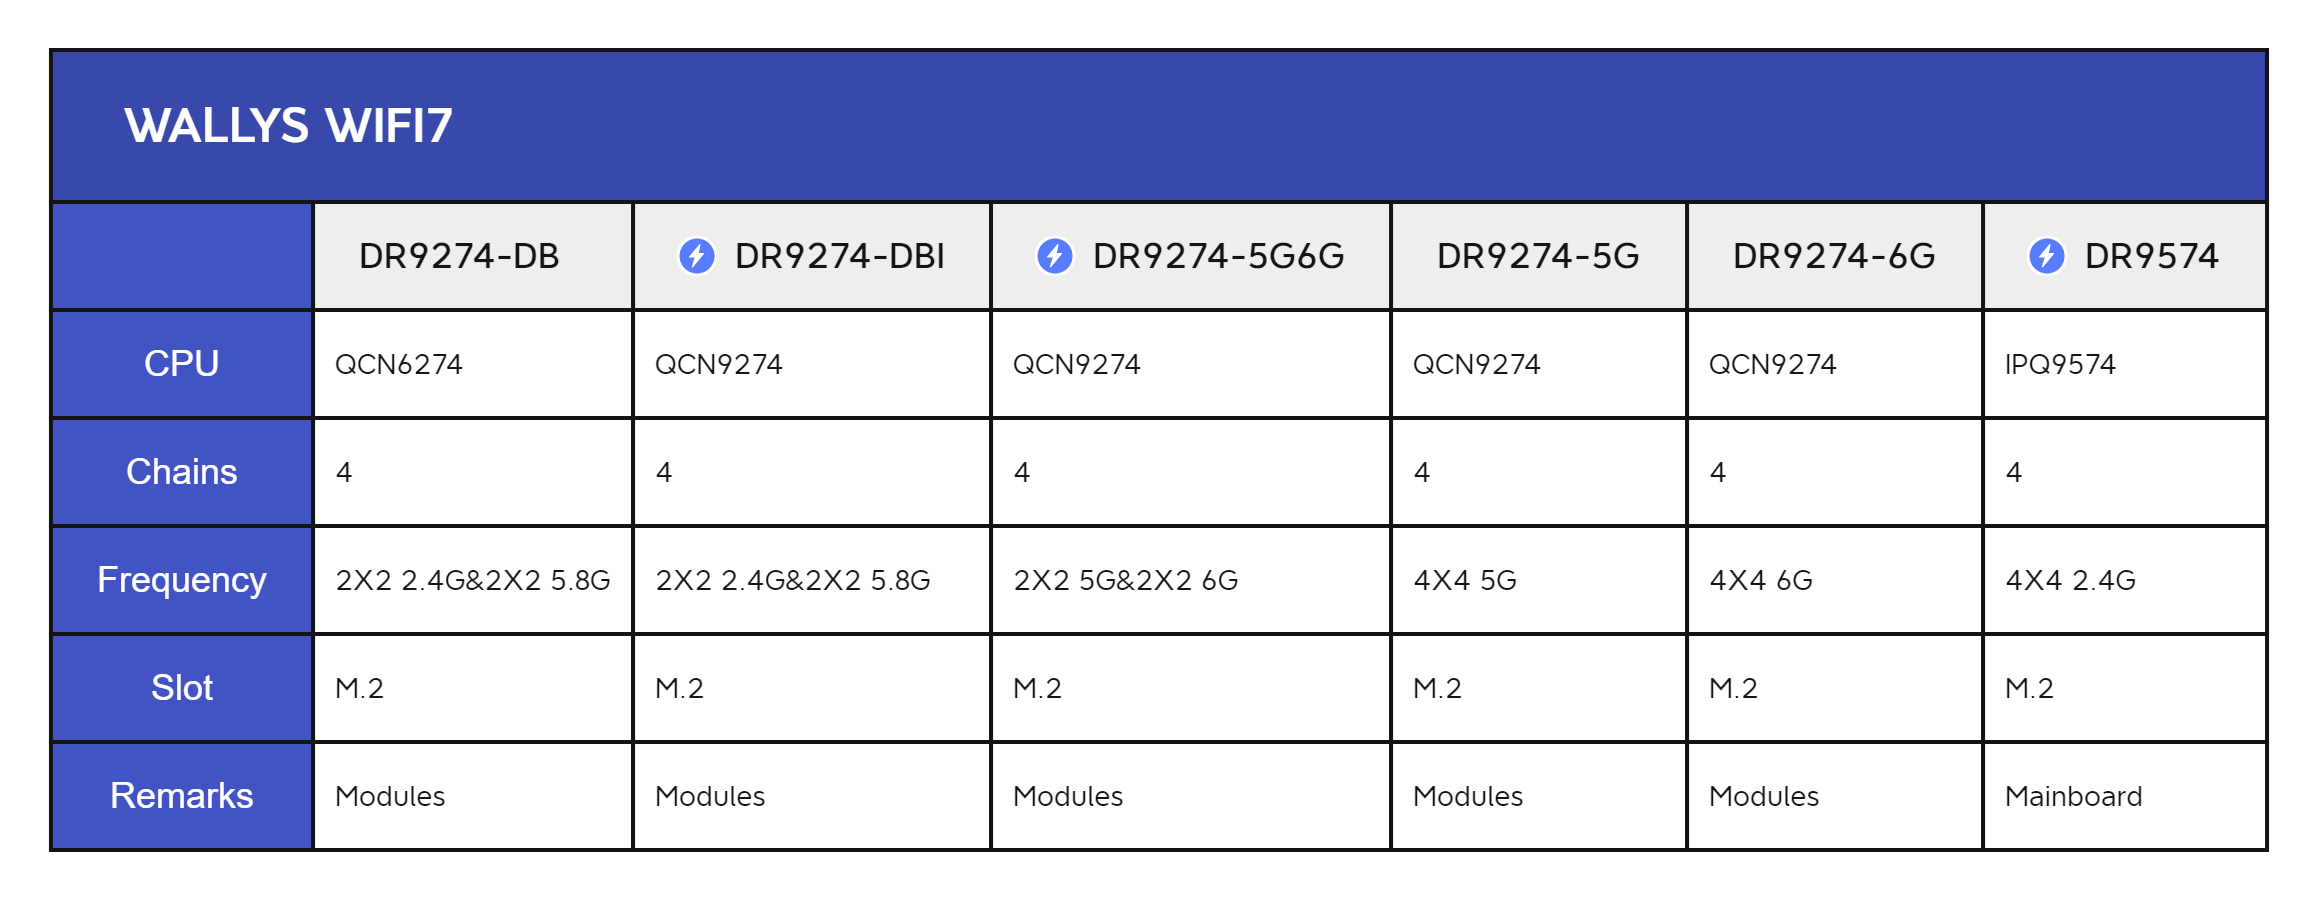 IPQ9574, IPQ9554, QCN9274, and QCN6274 Qualcomm Chipsets WiFi7 Features